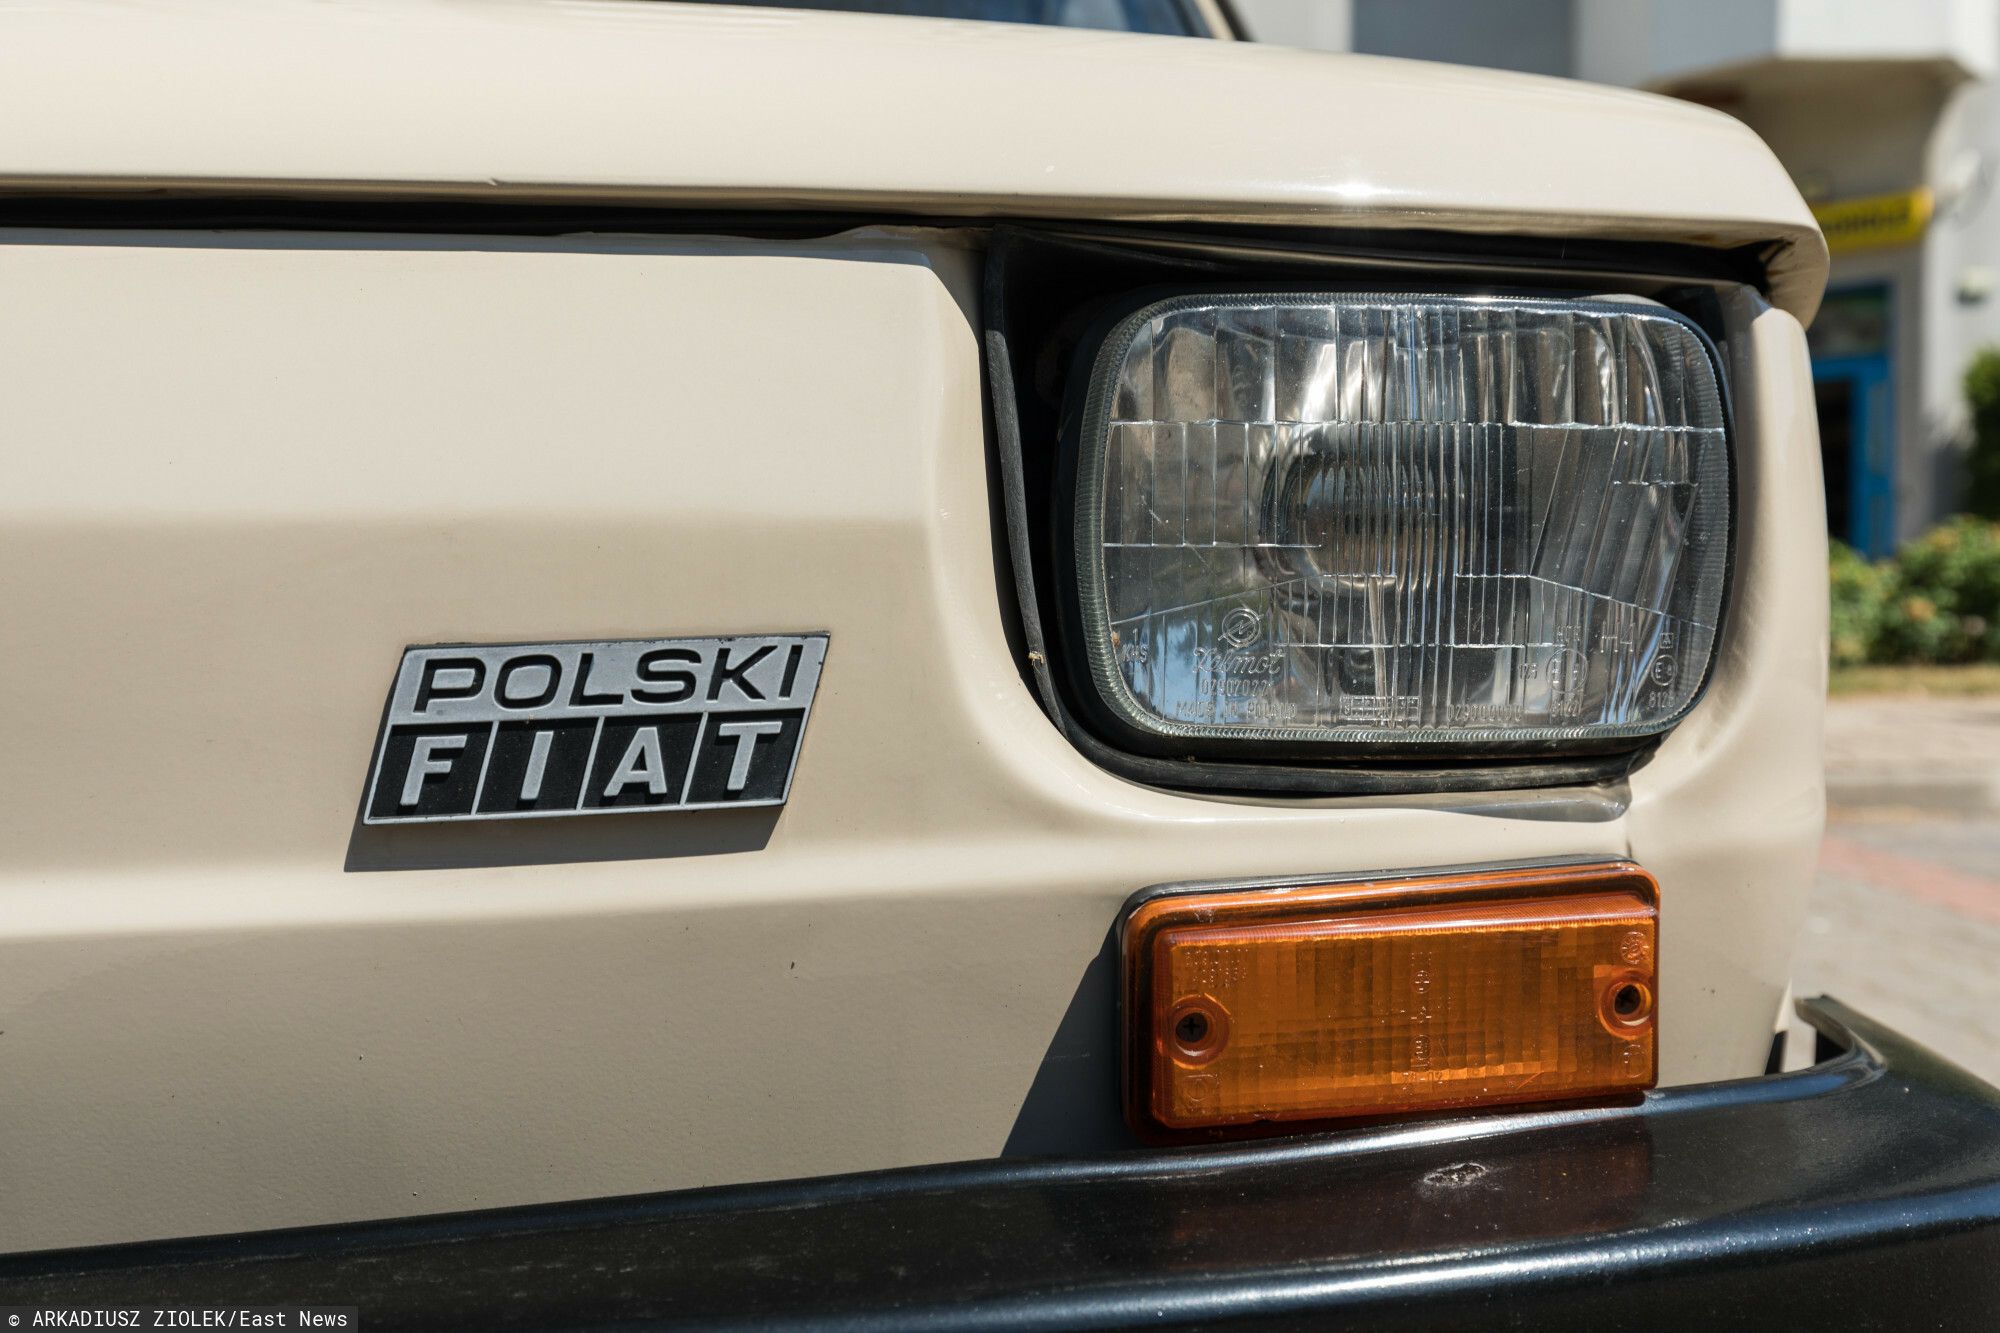 Polski Fiat 126